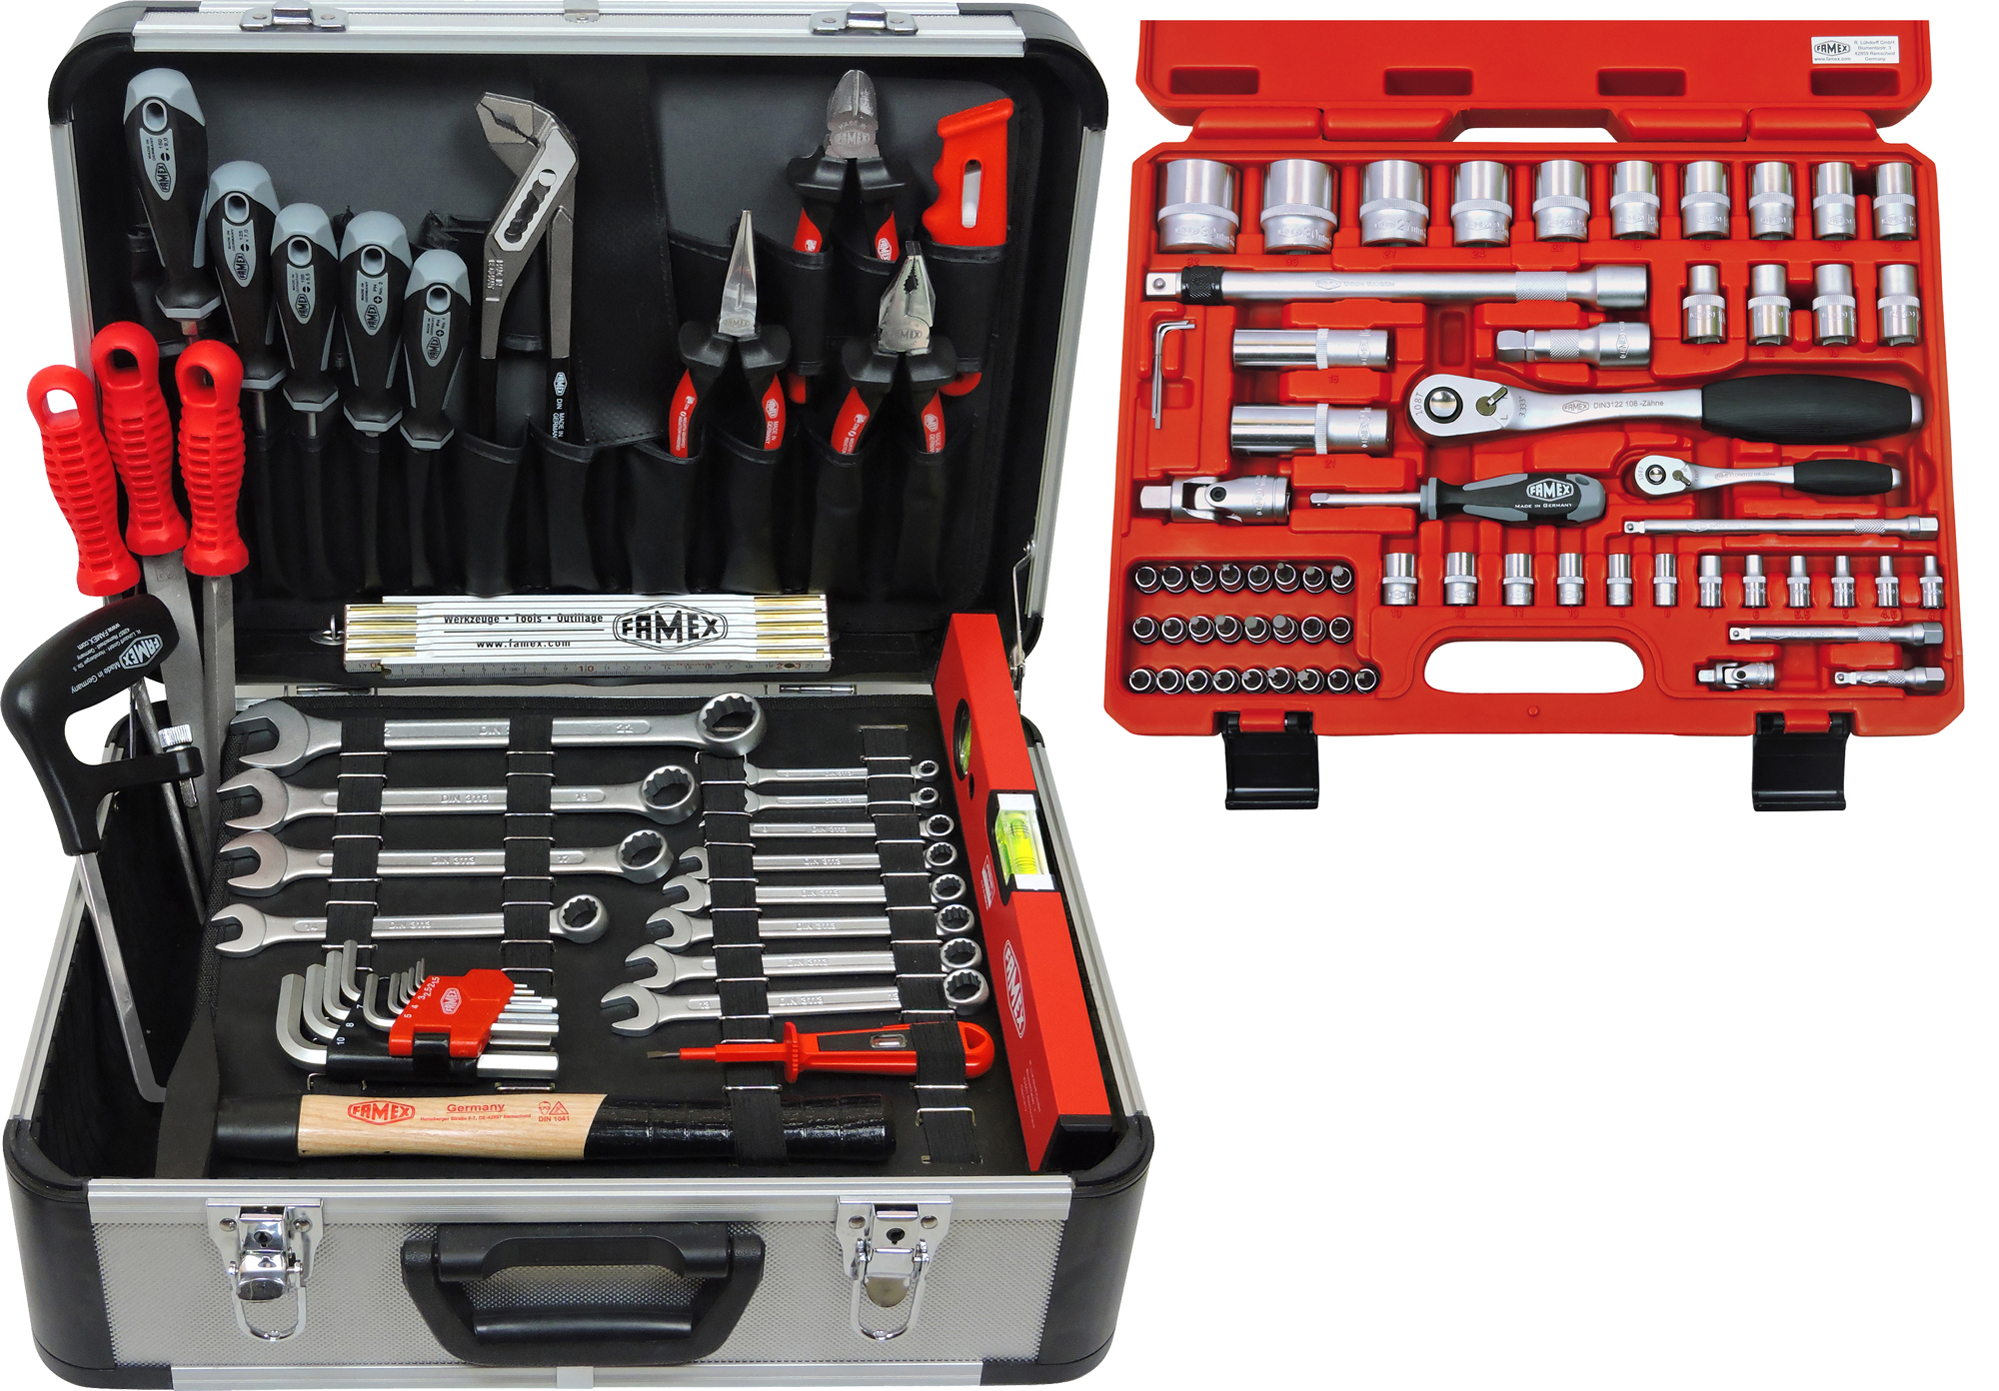 Werkzeuge - 729-18 günstig Werkzeugkoffer kaufen Steckschlüsselsatz Top-Qualität - online 66-teiligem FAMEX mit